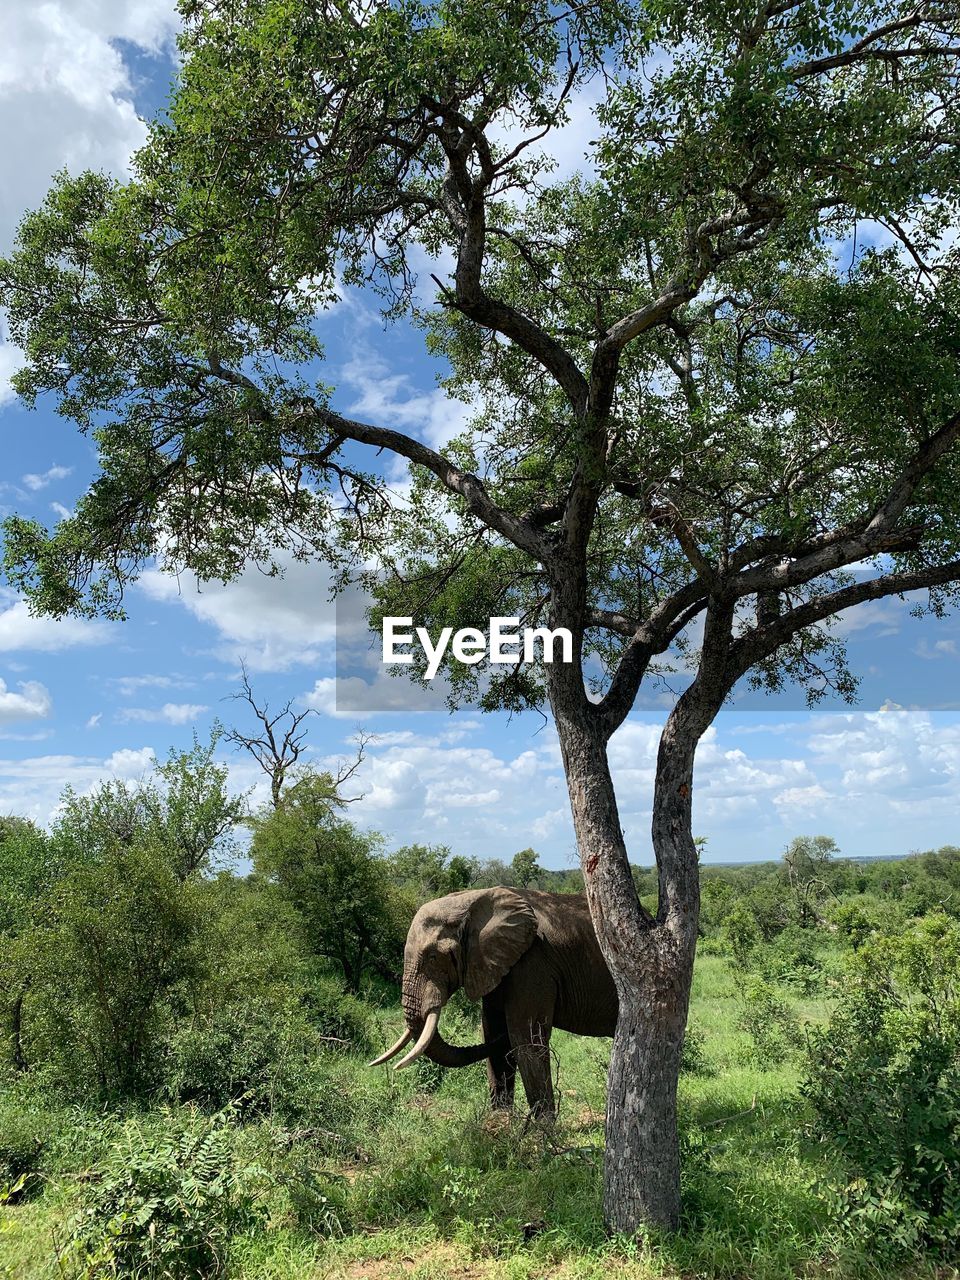 Elephant in kruger national park, south africa